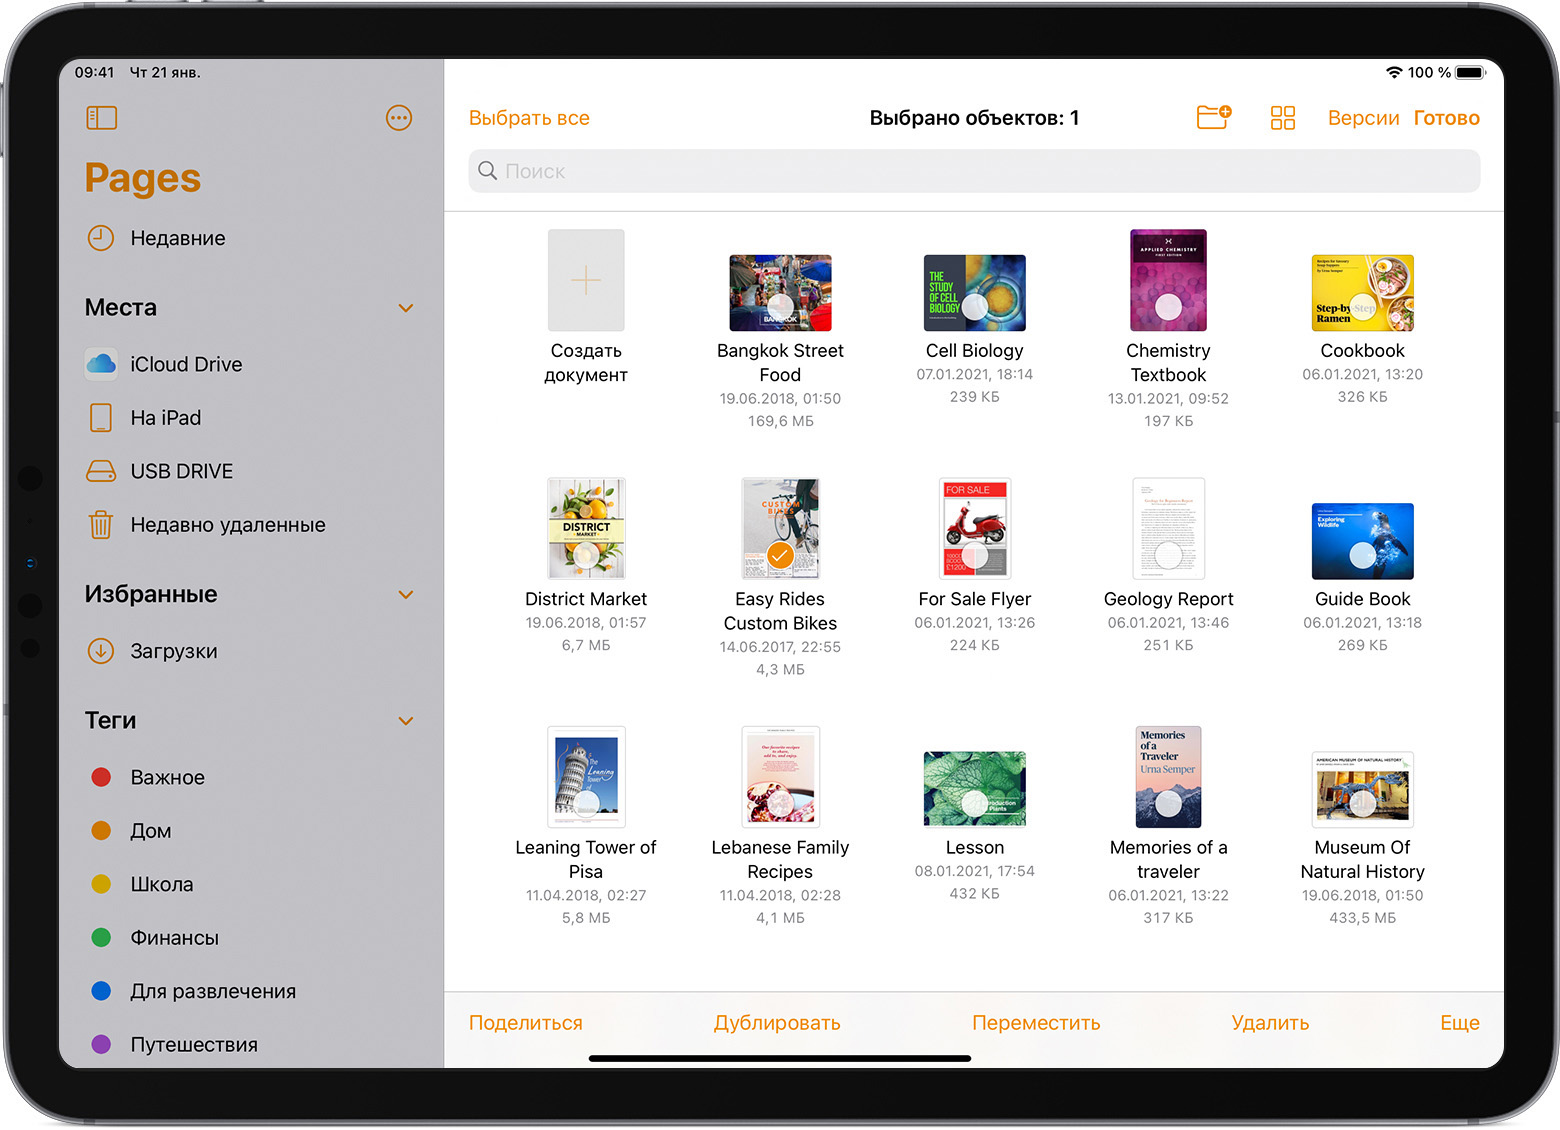 Изображение iPad Pro с открытым браузером файлов в Pages и одним выбранным файлом